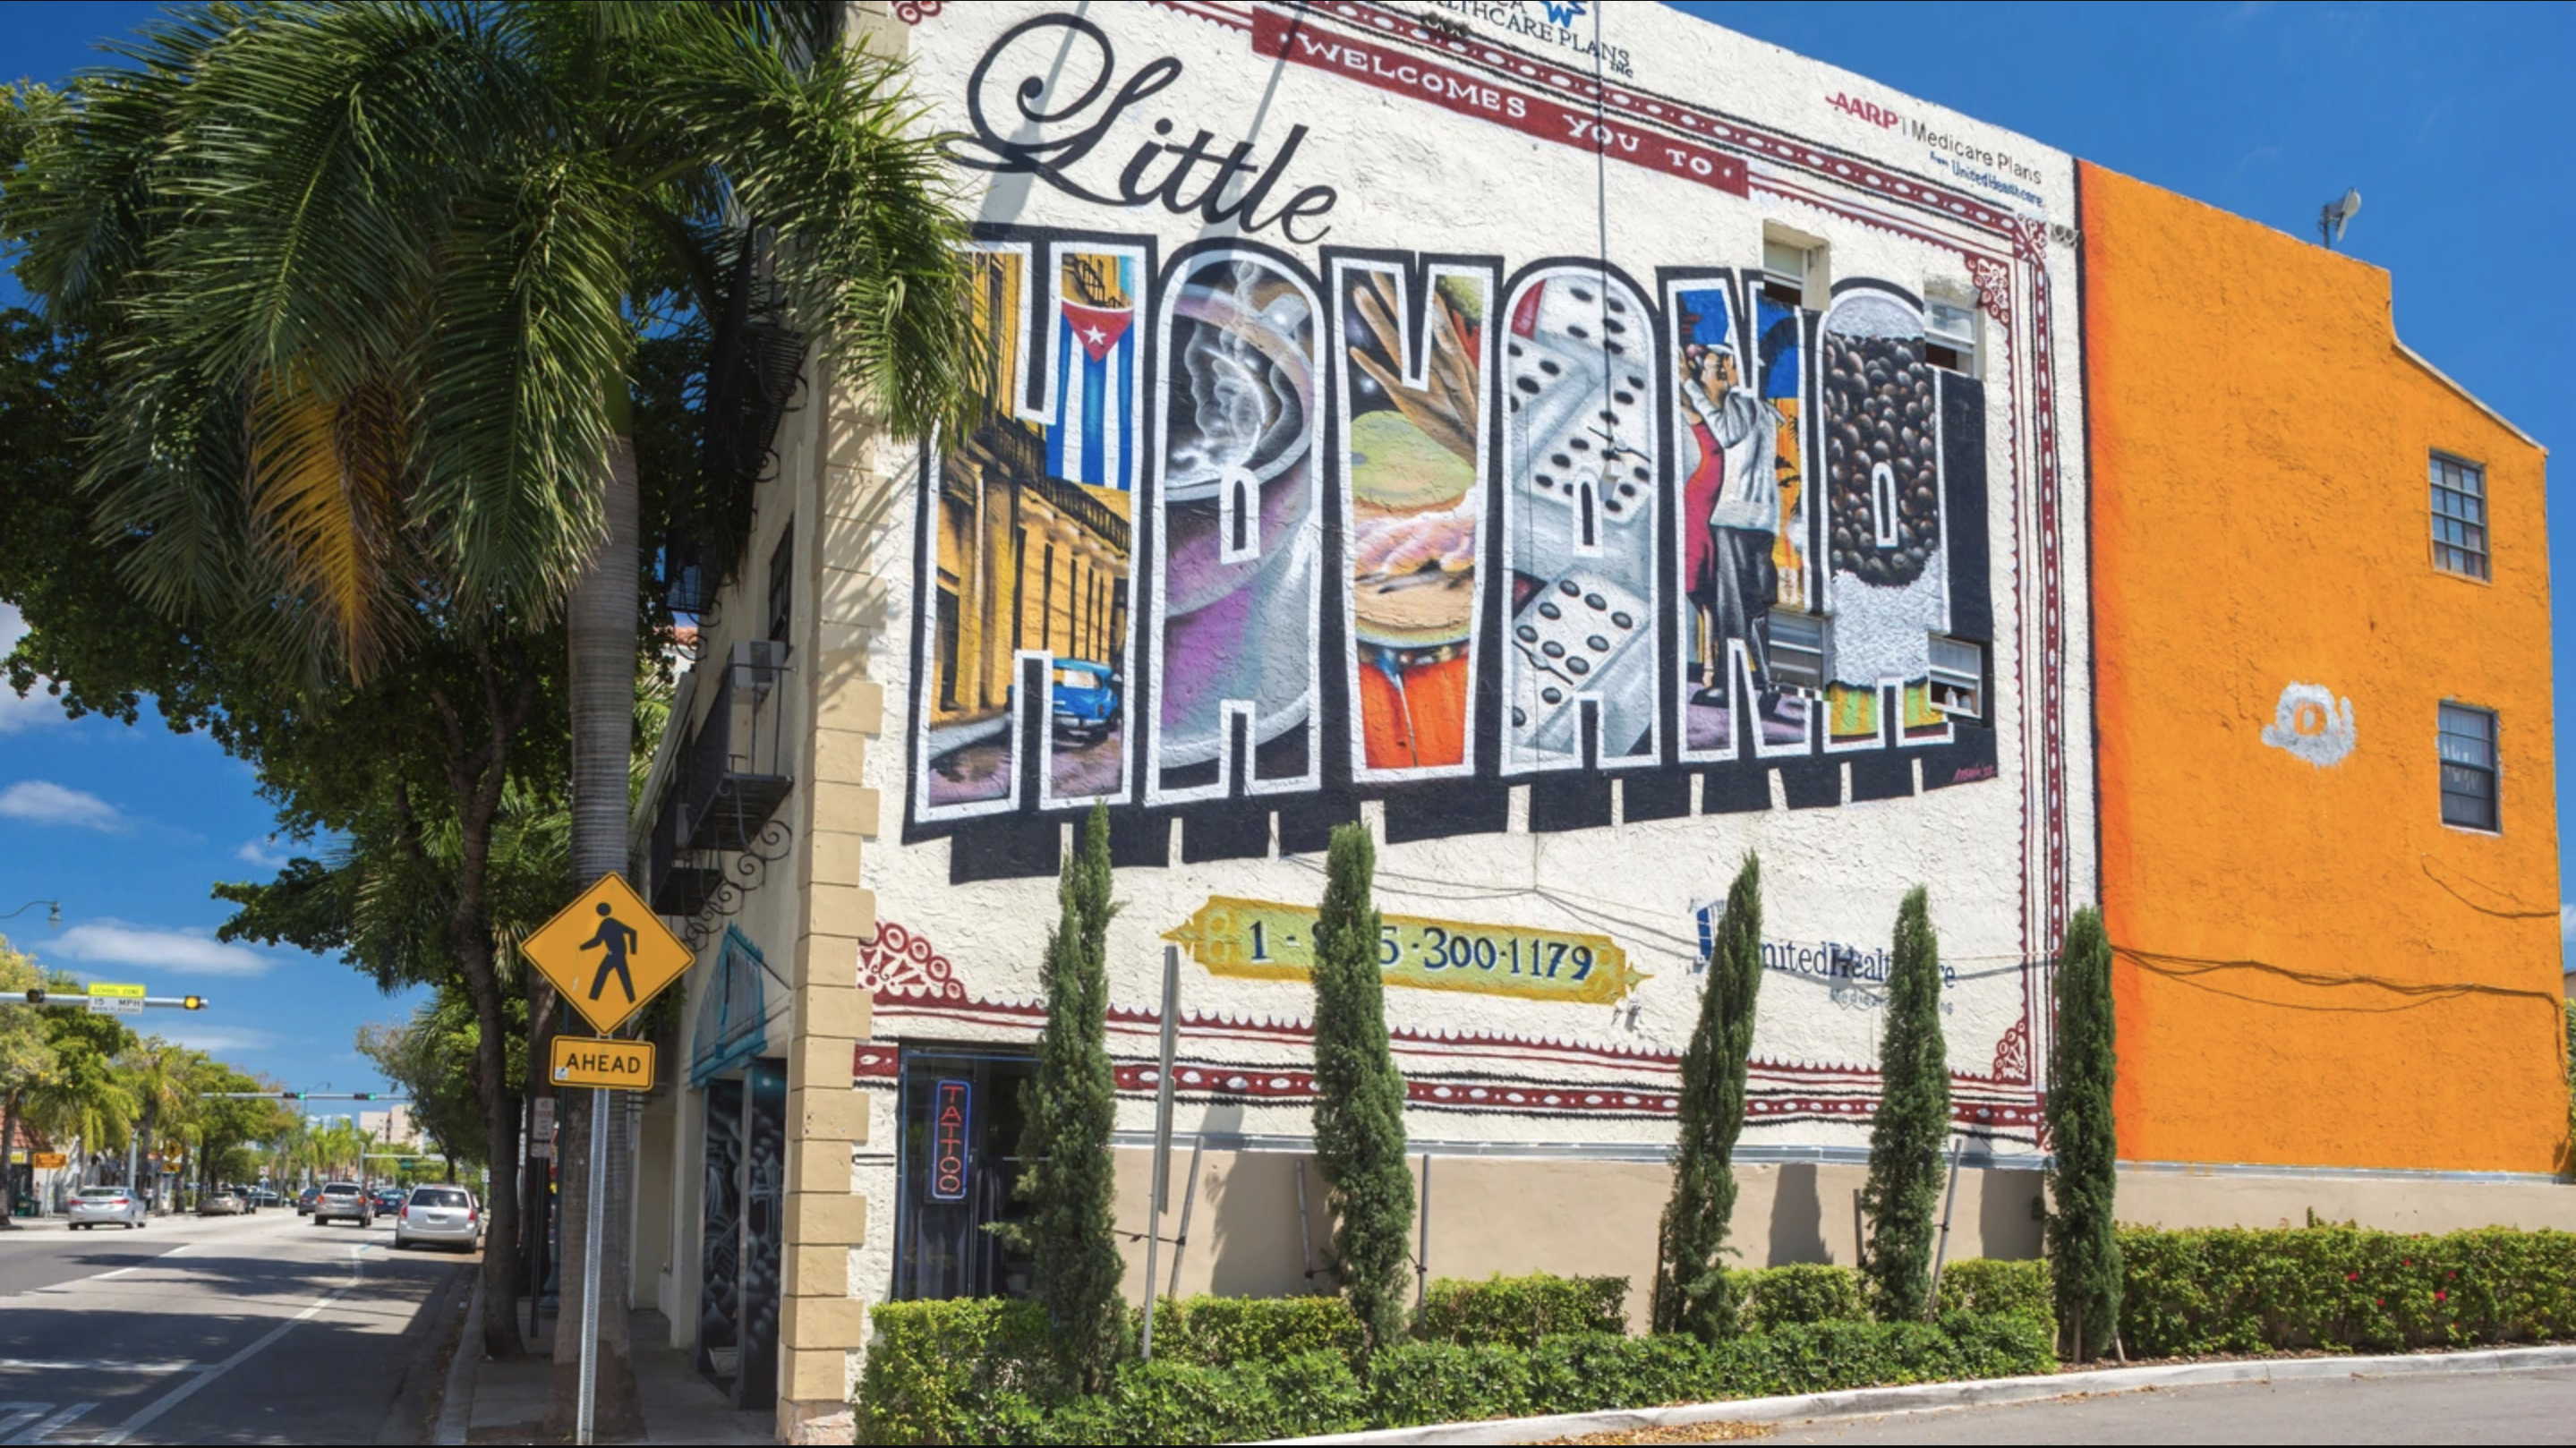 Little Havana se ha transformado de un vecindario de clase media baja a un importante centro cultural con una vibrante comunidad LGBT+. 